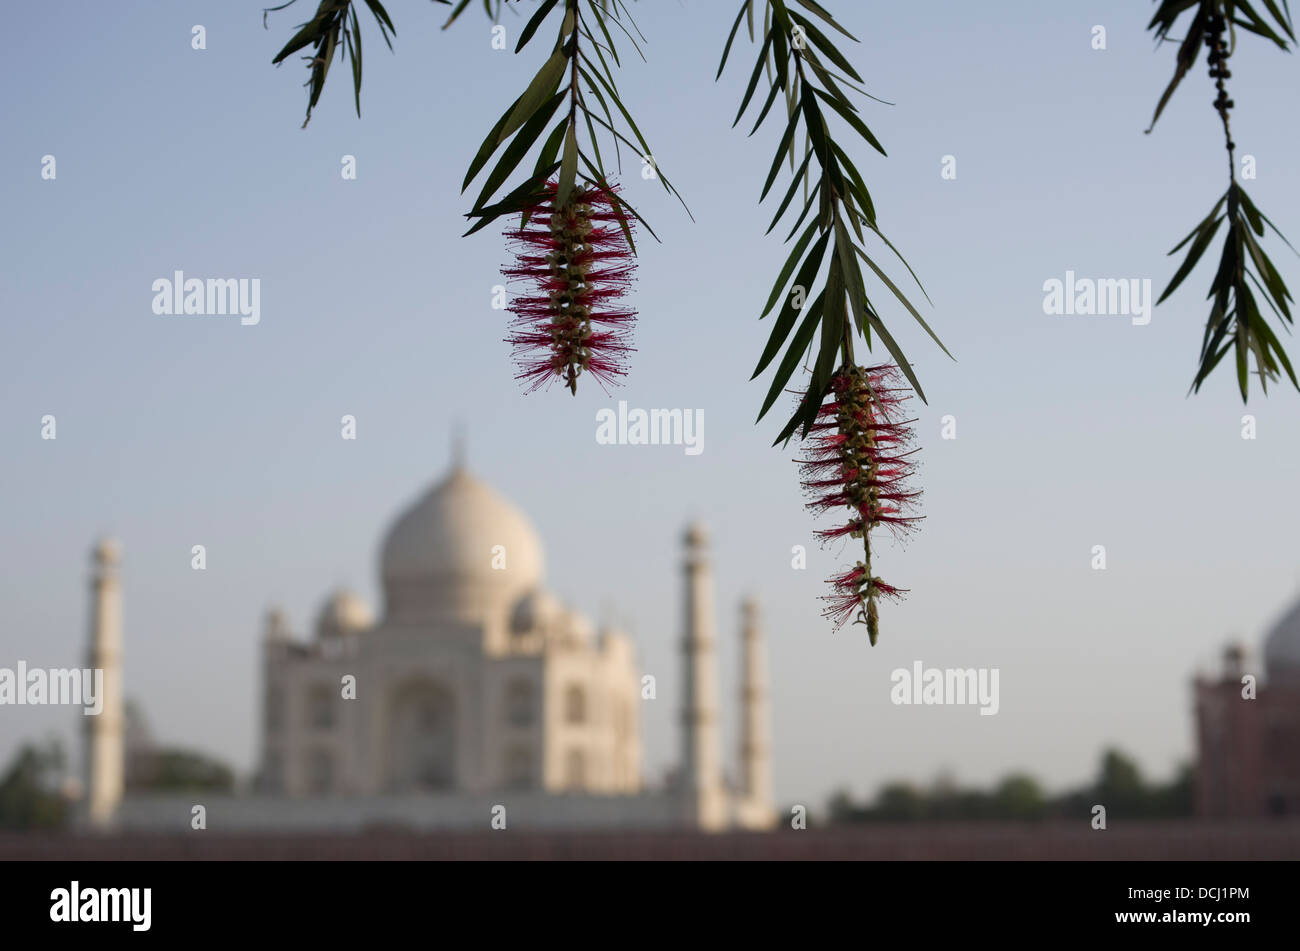 Mausolée en marbre blanc du Taj Mahal - Agra (Inde), site du patrimoine mondial de l'UNESCO Banque D'Images